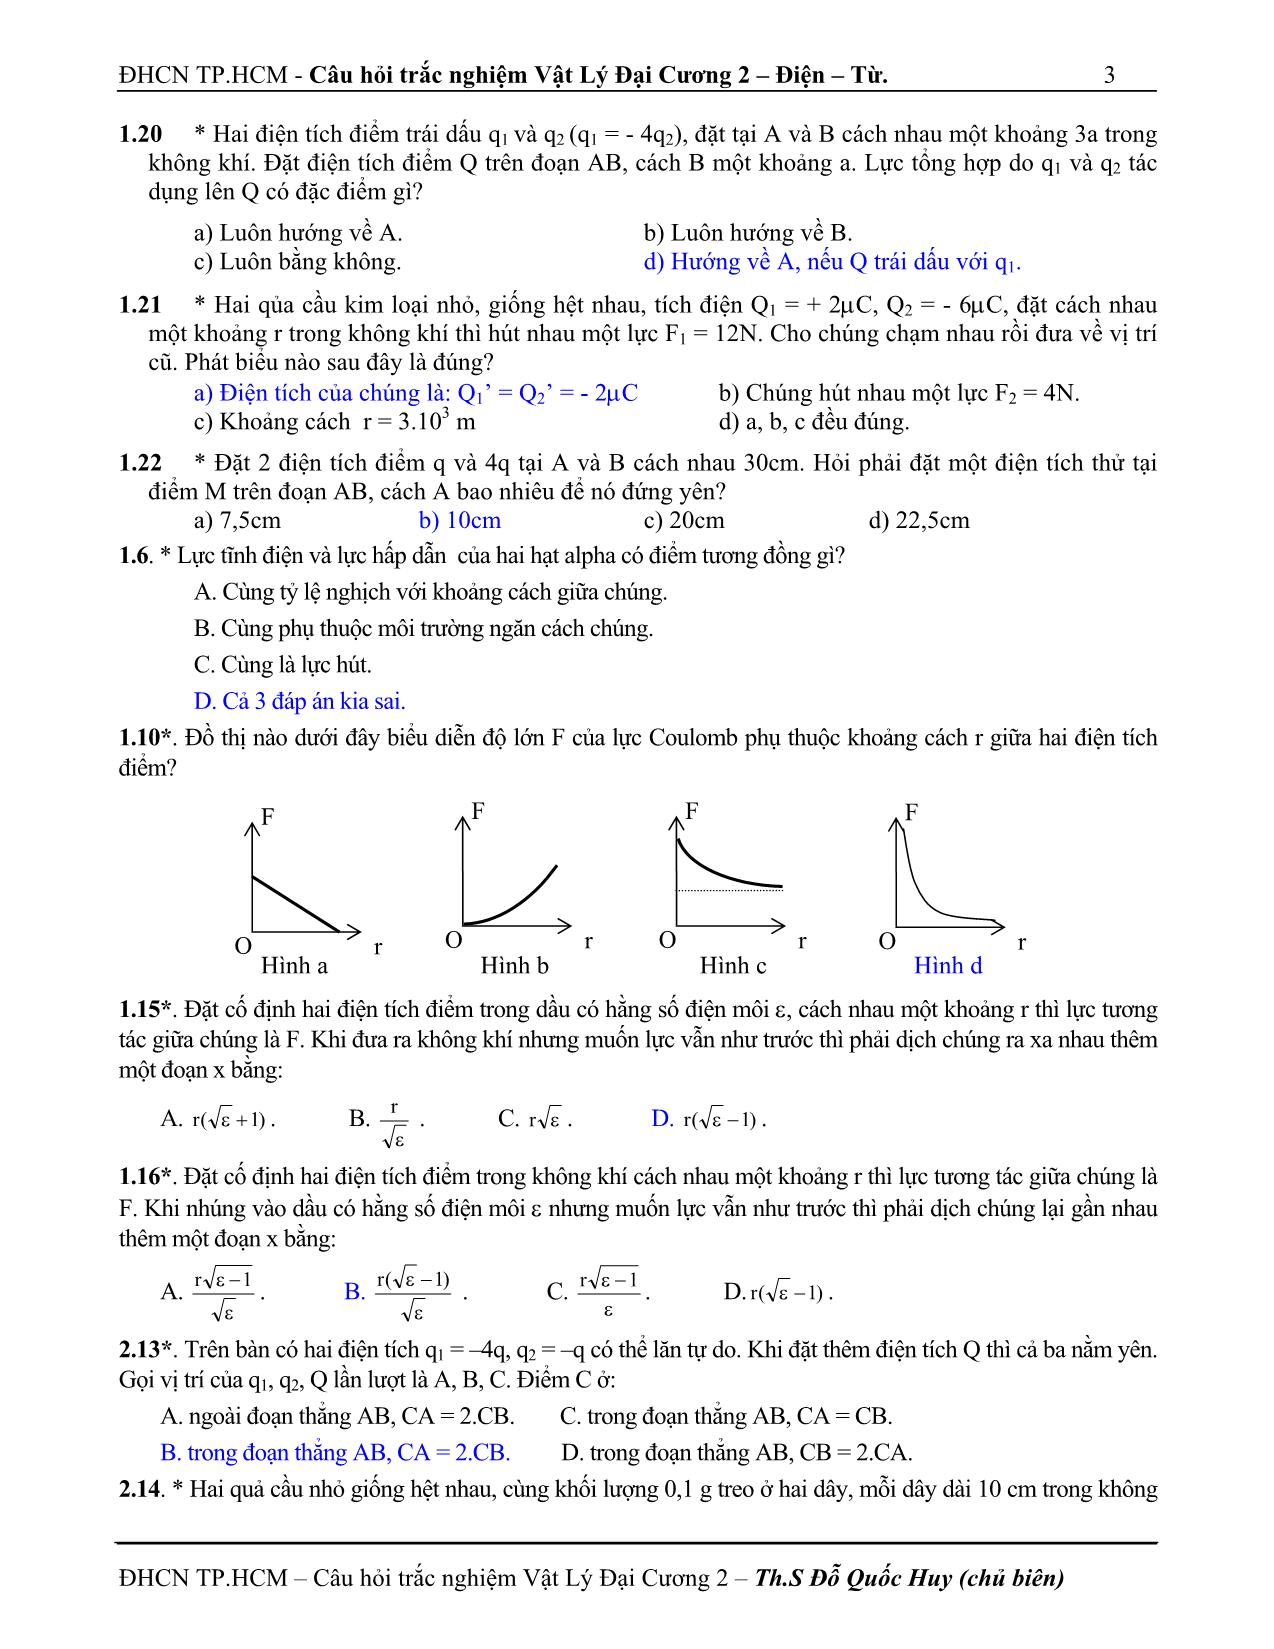 Câu hỏi trắc nghiệm vật lý đại cương 2 trang 3